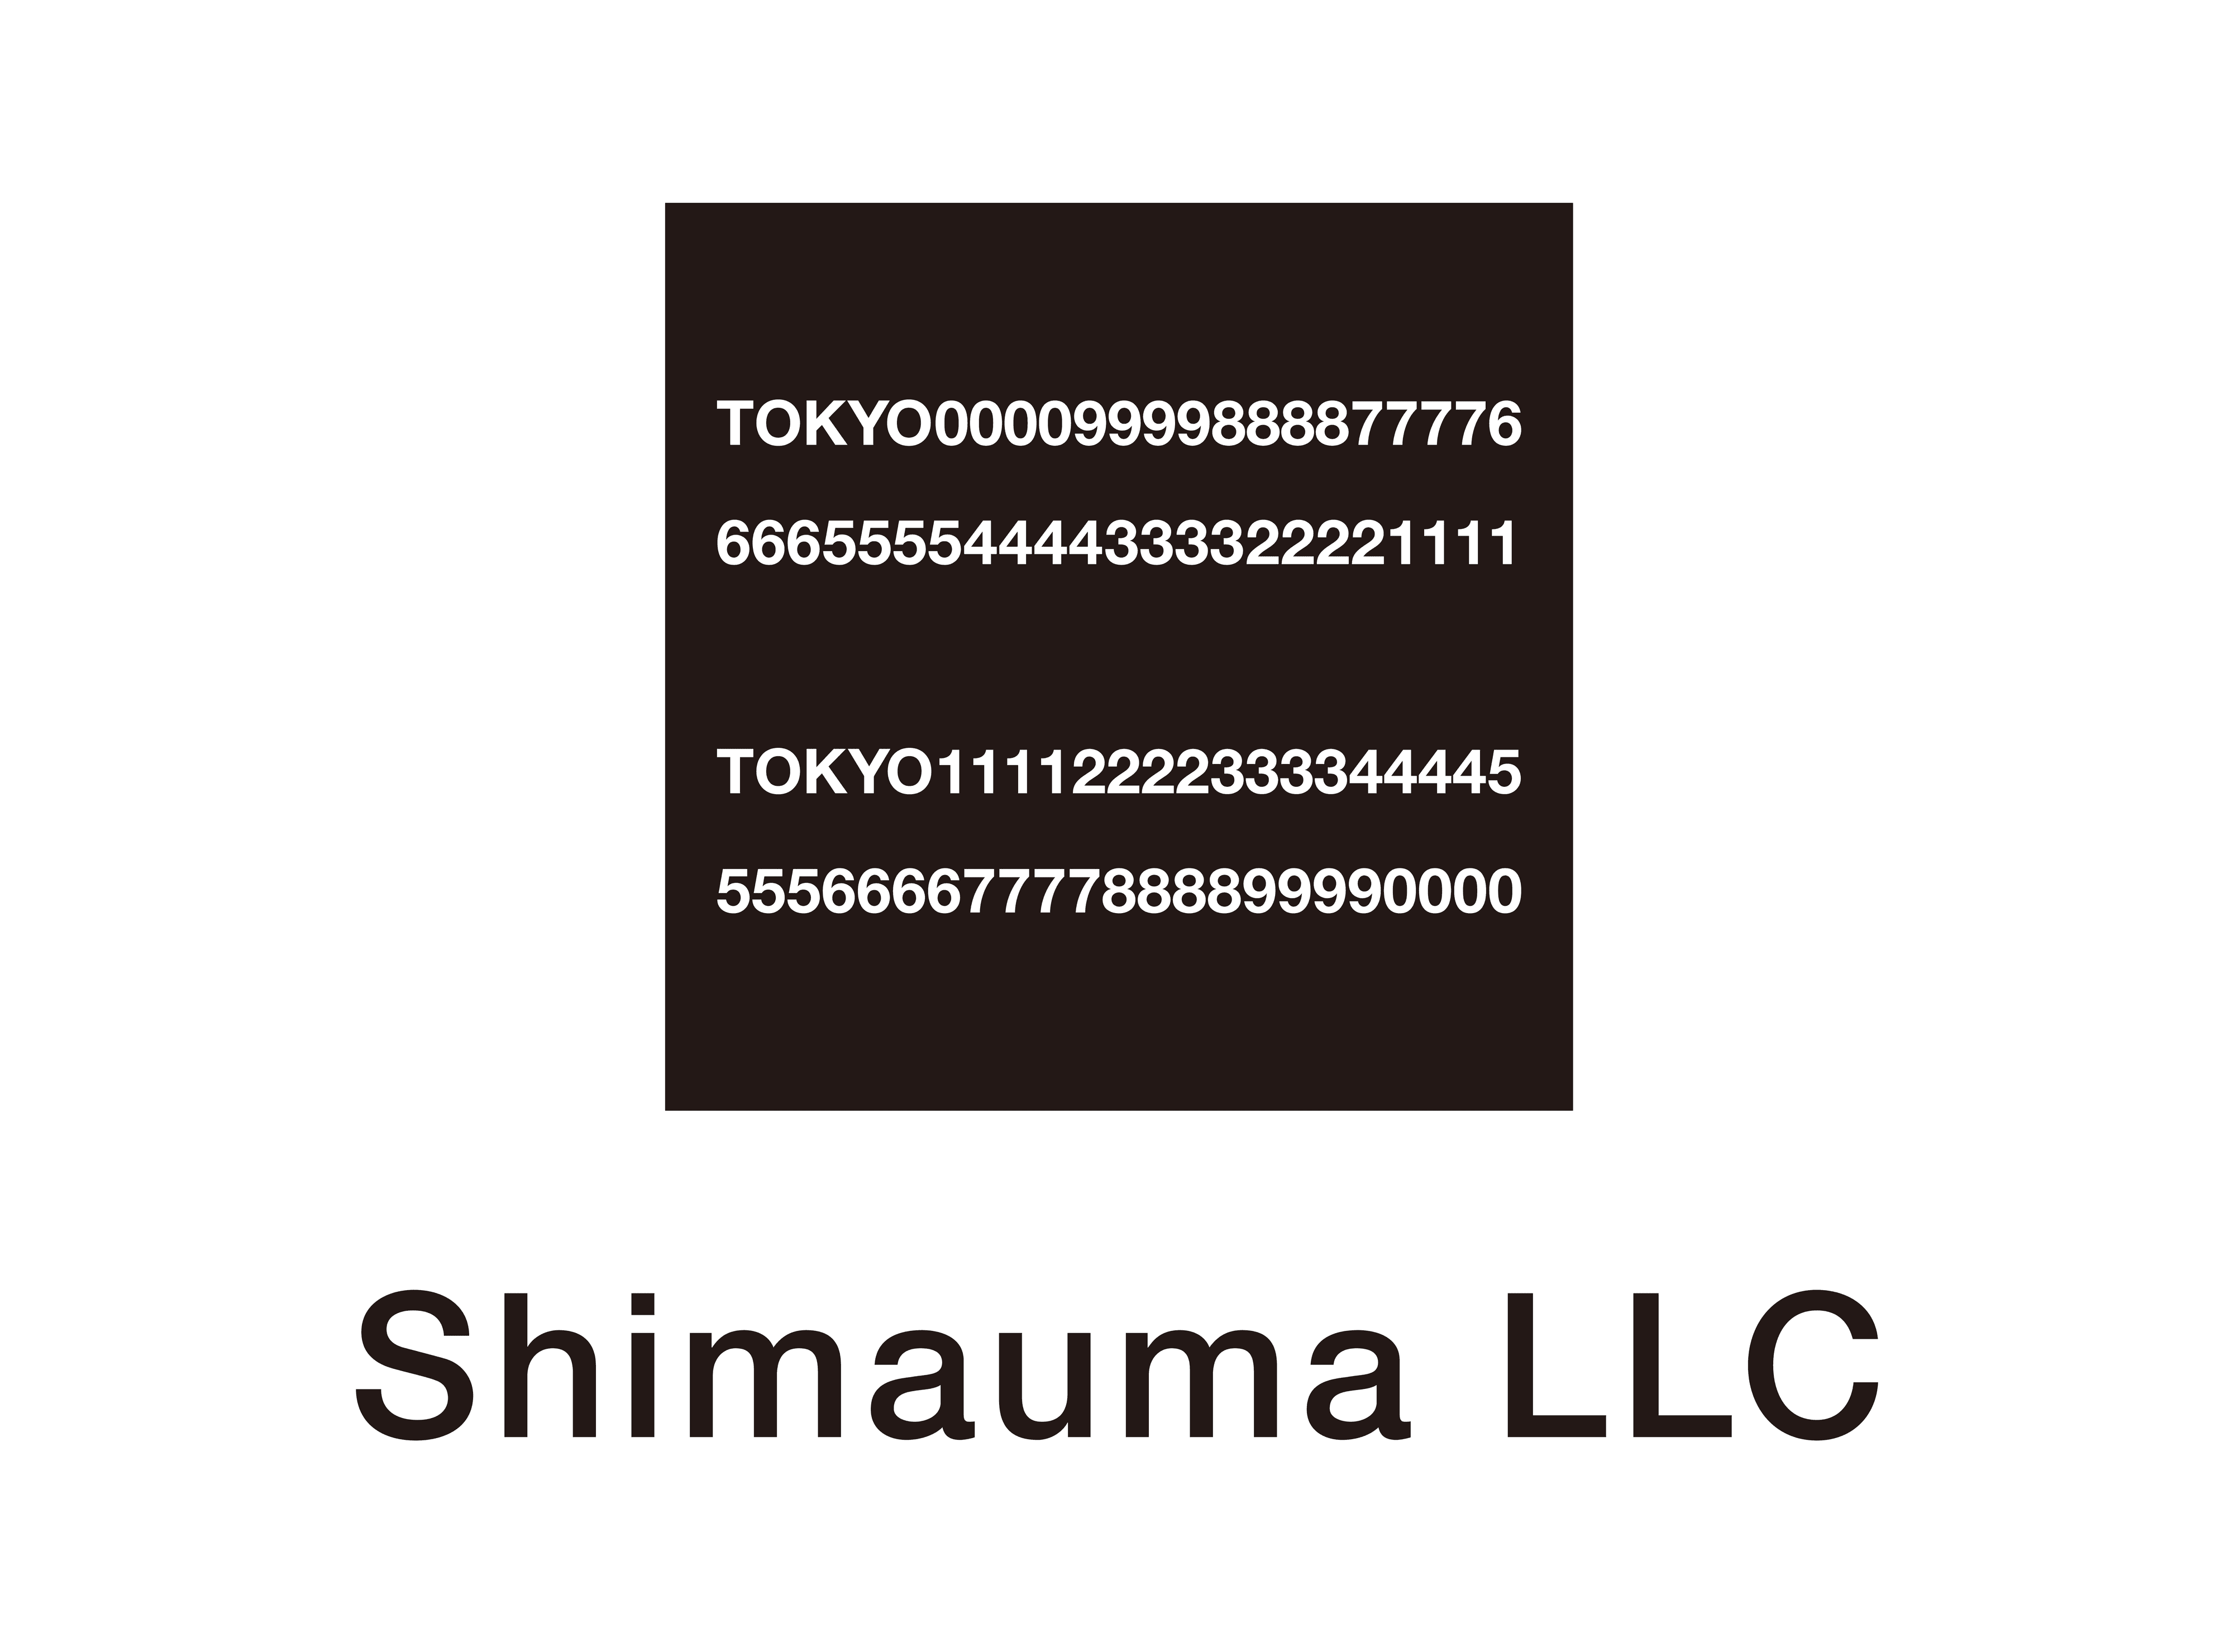 ShimaumaLLC